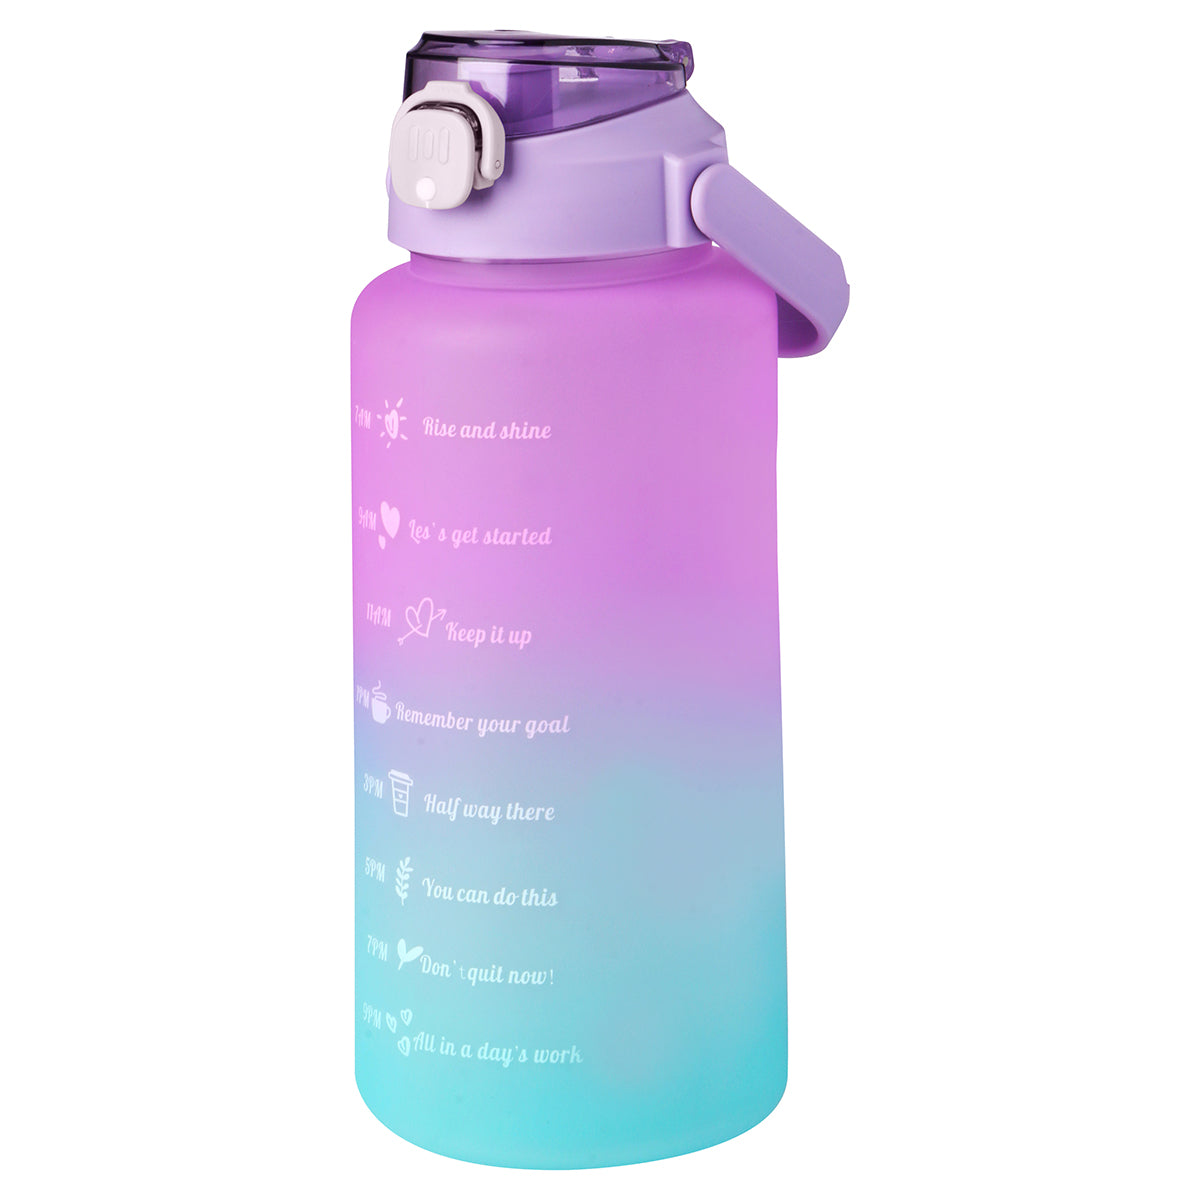 Botella motivacional de agua, capacidad 2 litros